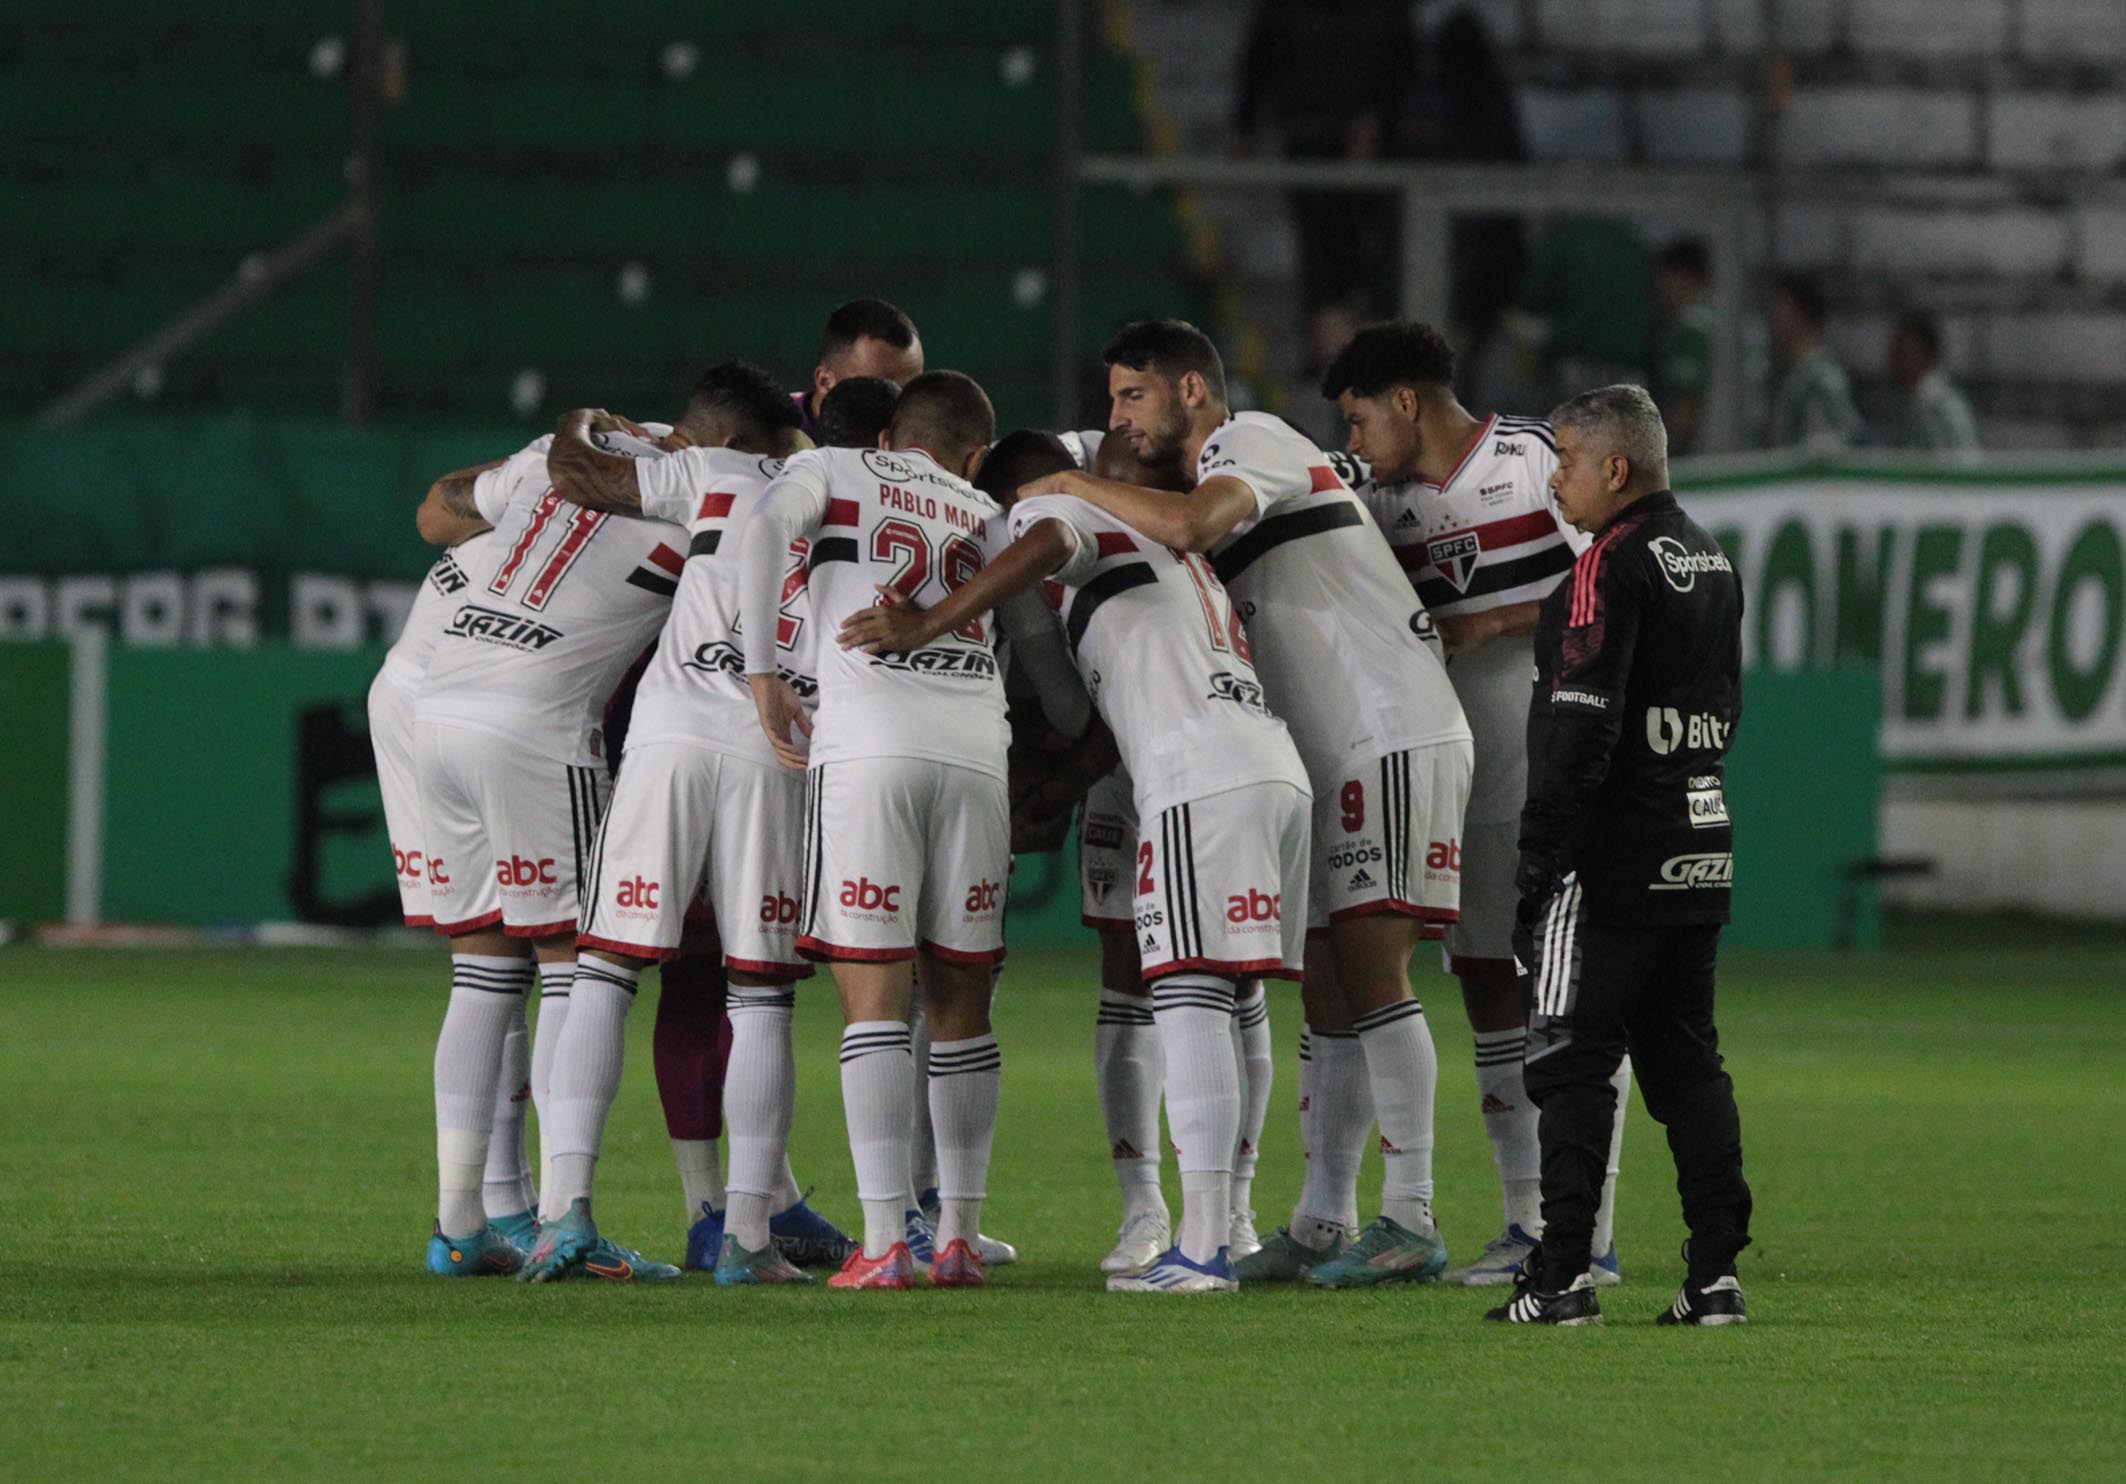 São Paulo recebe Juventude em busca da classificação na Copa do Brasil; retrospecto recente é equilibrado